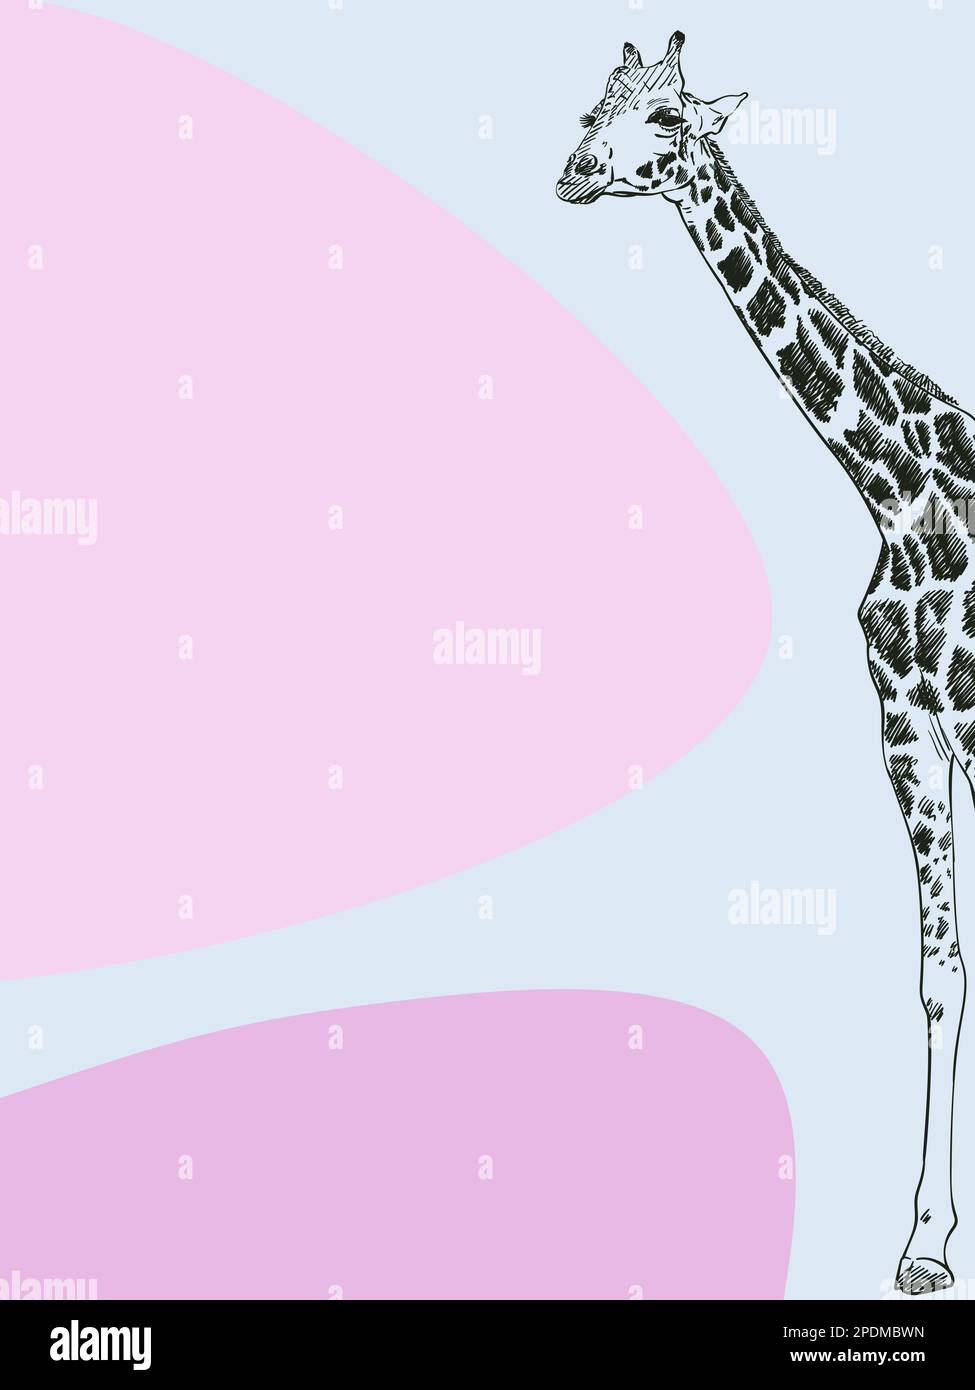 Bannière minimaliste avec croquis girafe et formes abstraites épurées, illustration vectorielle dessinée à la main Illustration de Vecteur